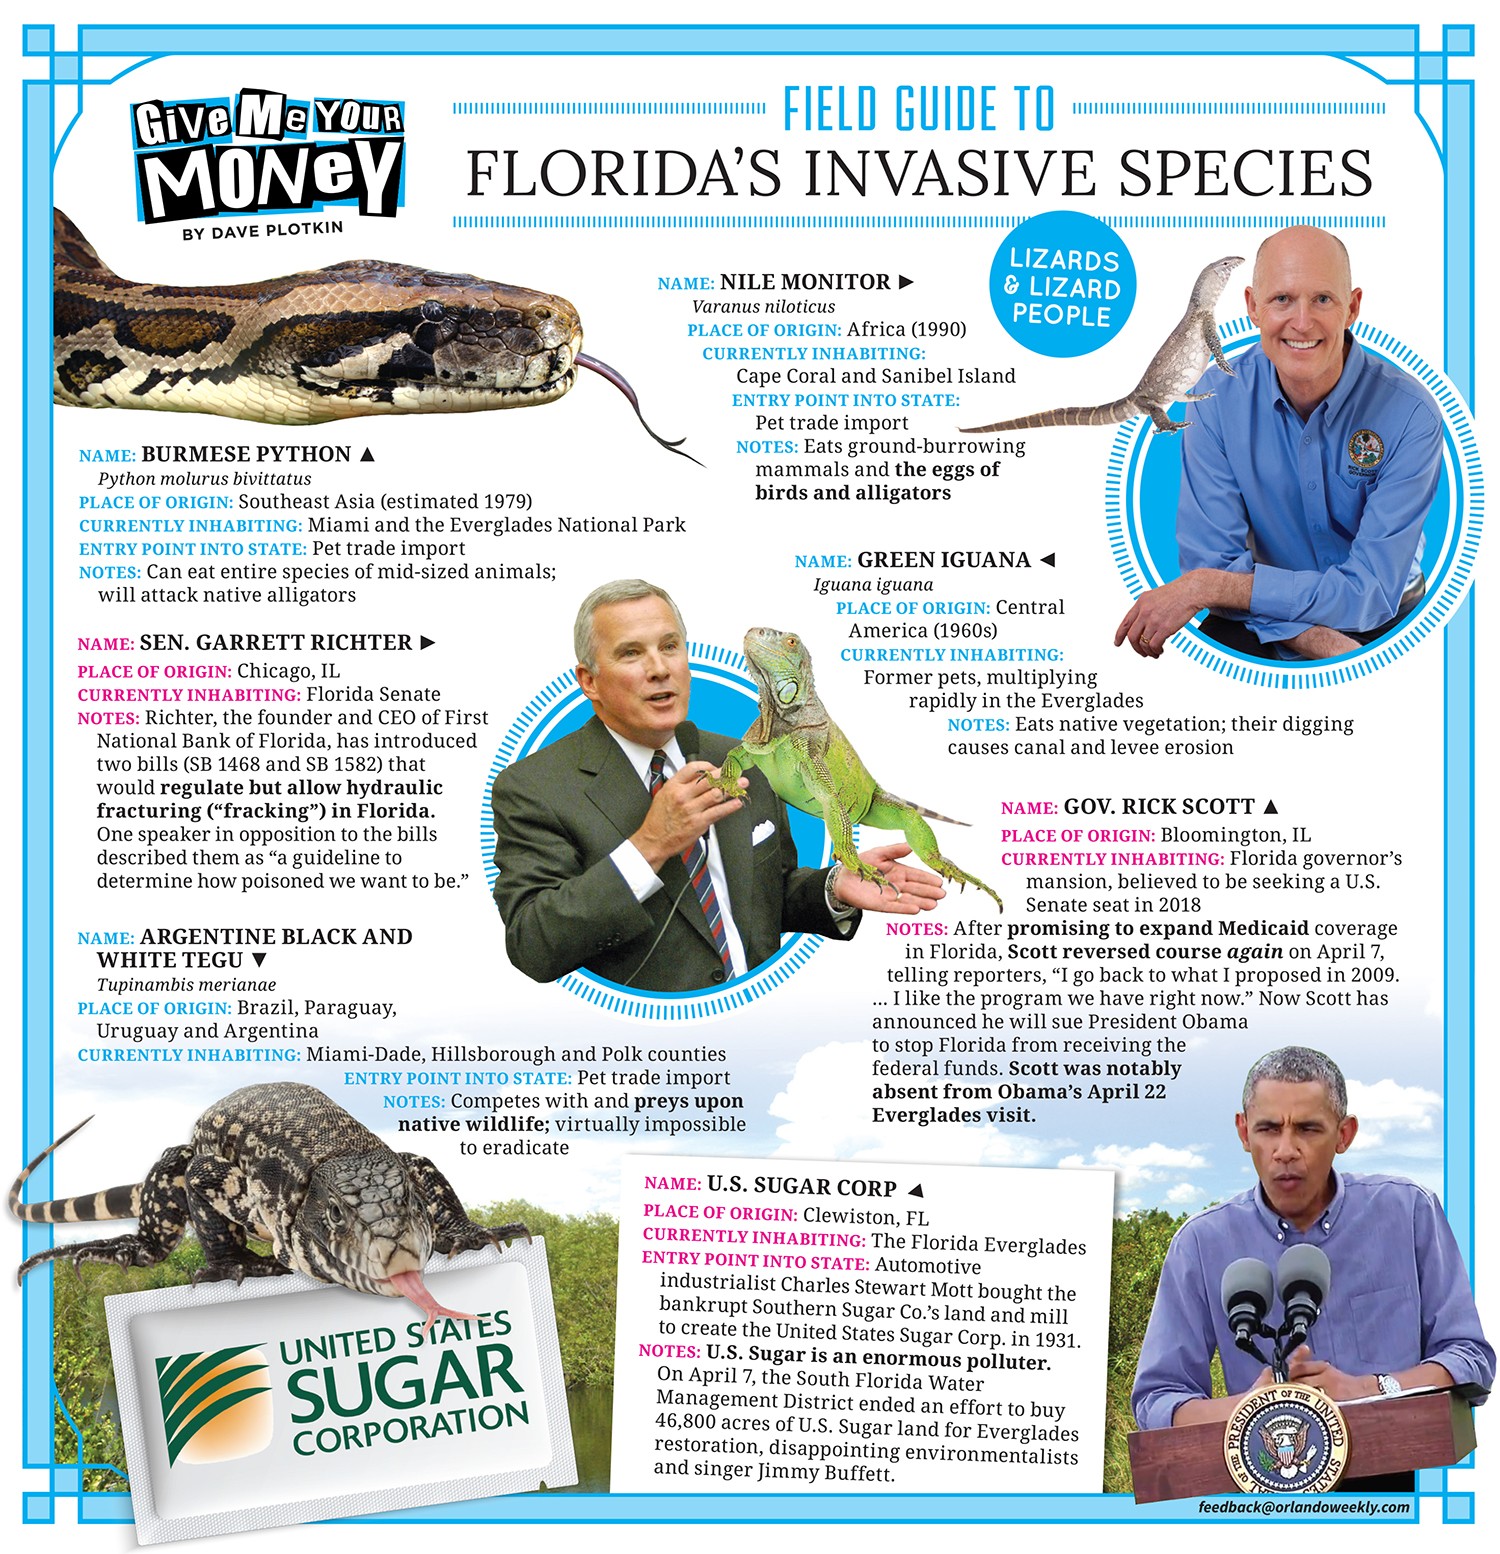 Field guide to Florida's invasive species | Orlando Area News | Orlando |  Orlando Weekly